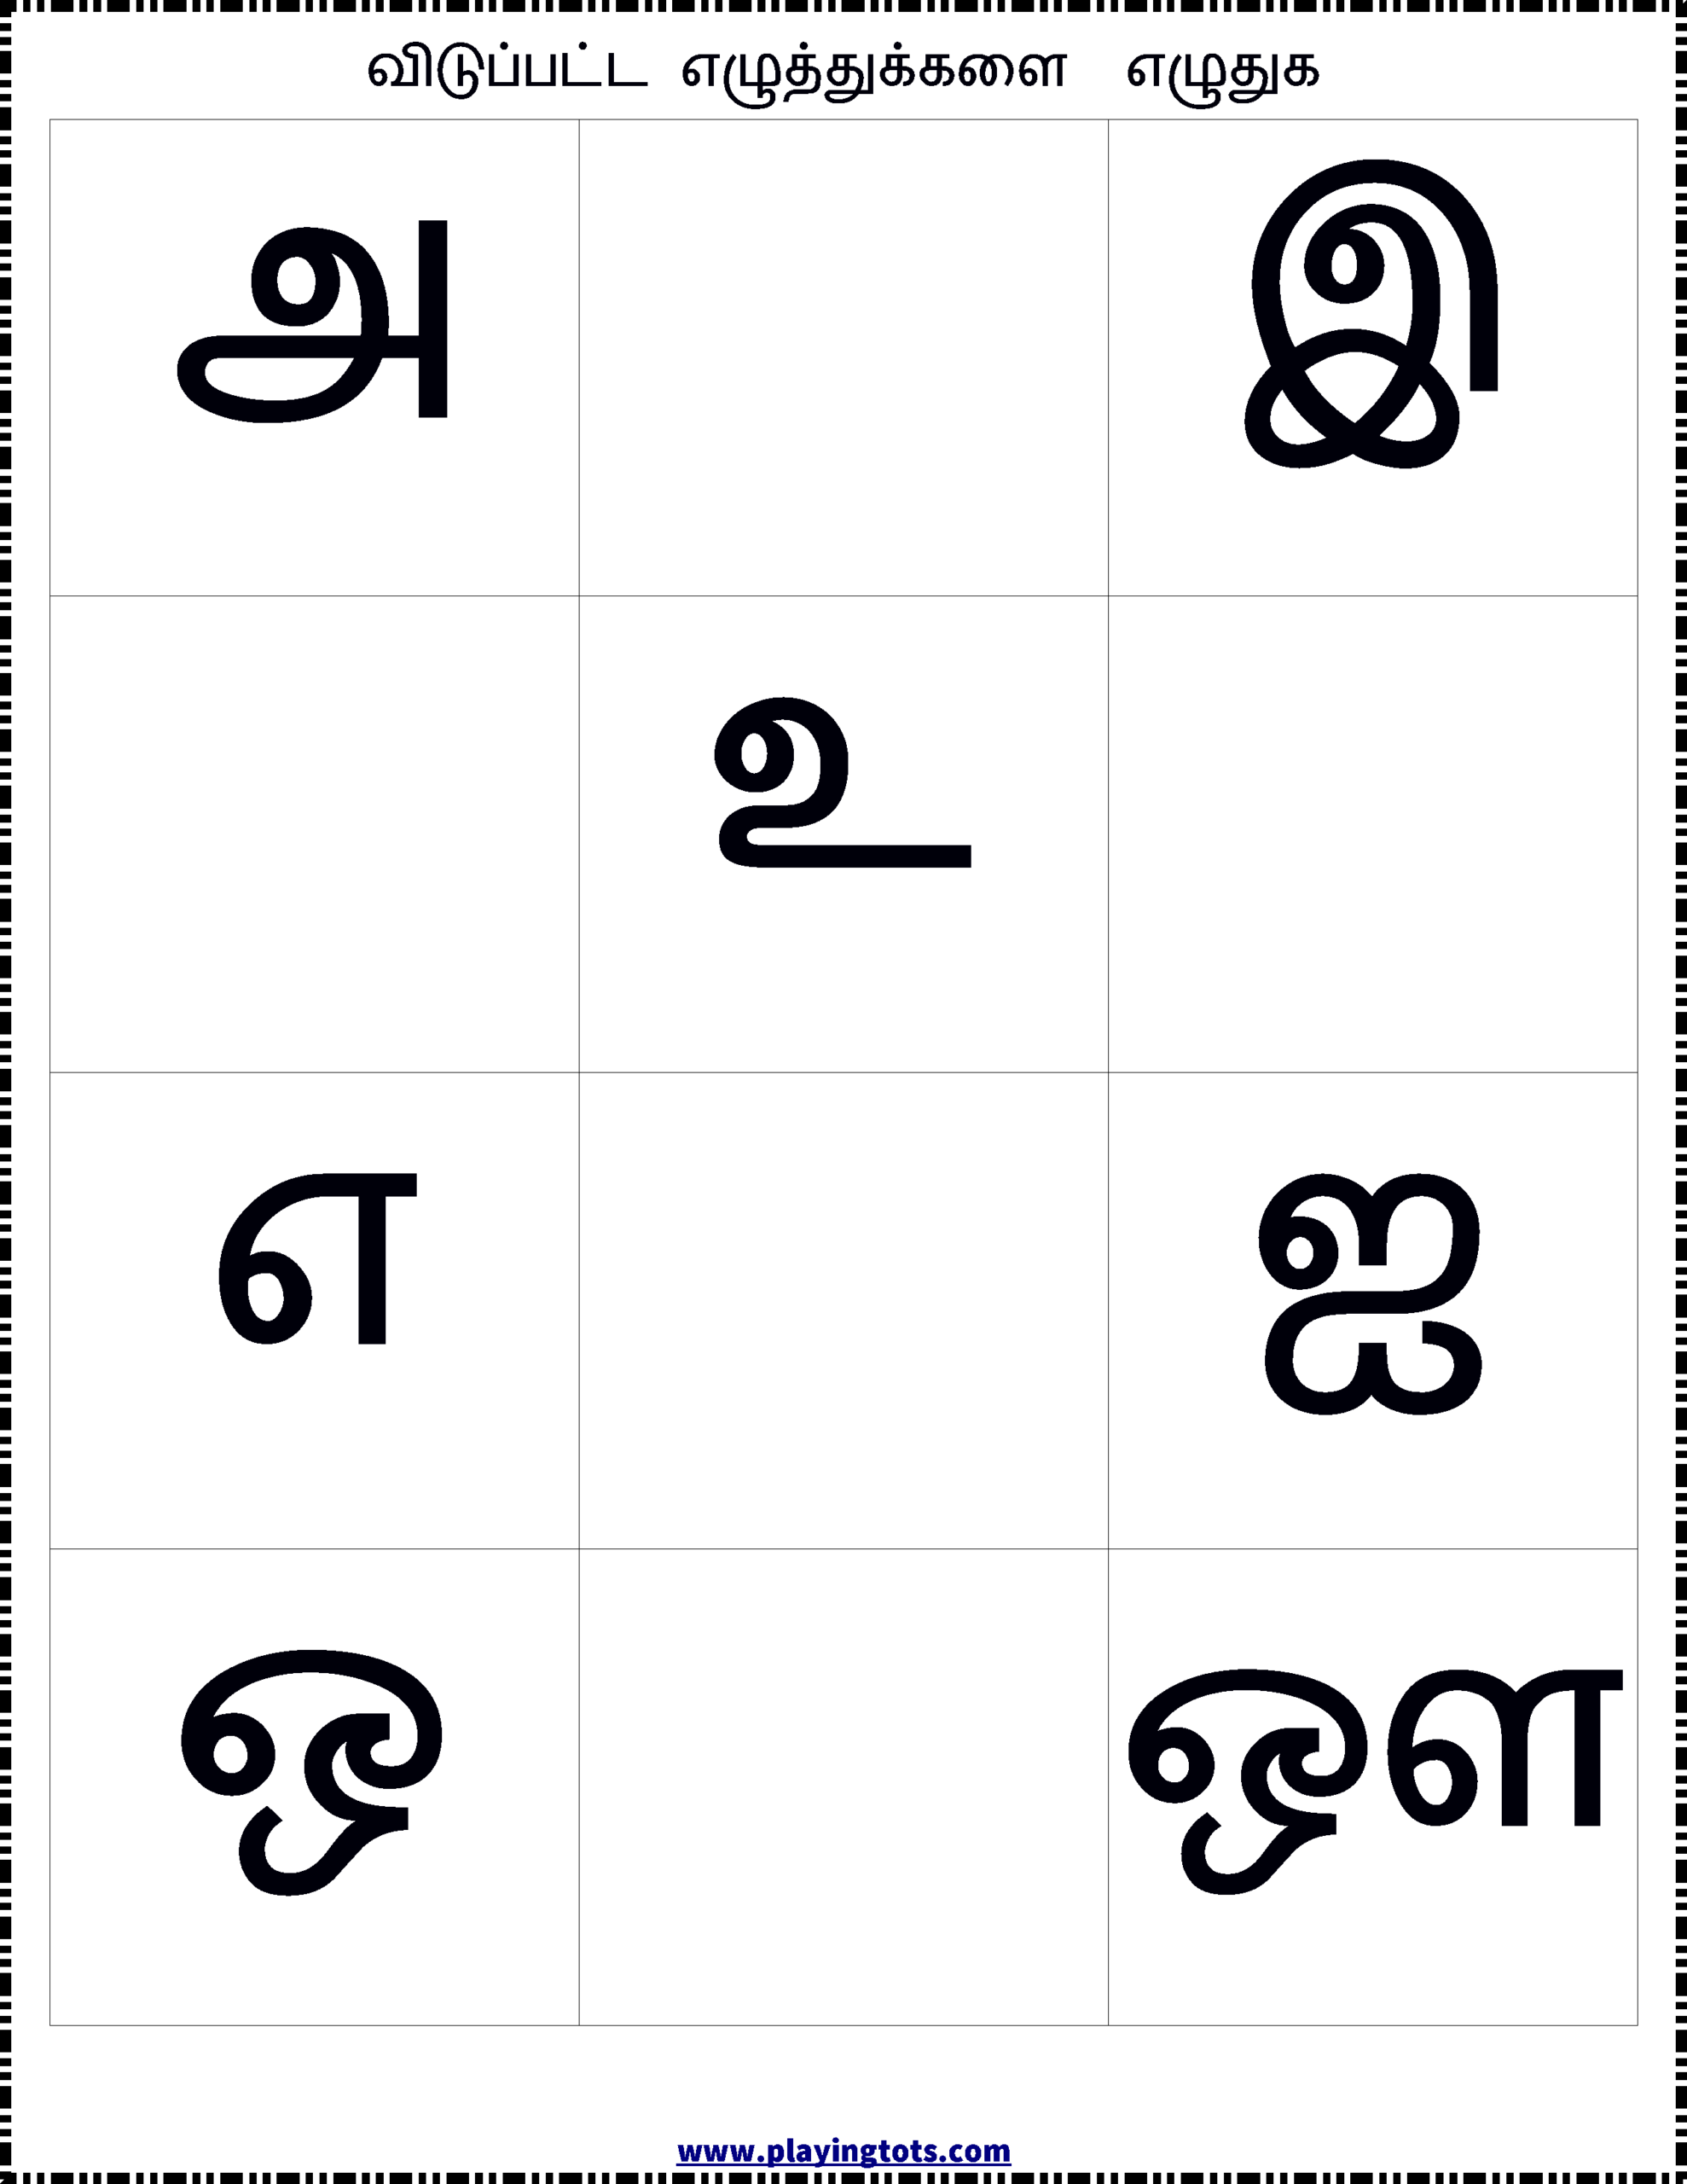 உயிர் எழுத்துக்கள் - Worksheet Keywords for Tamil Letters Tracing